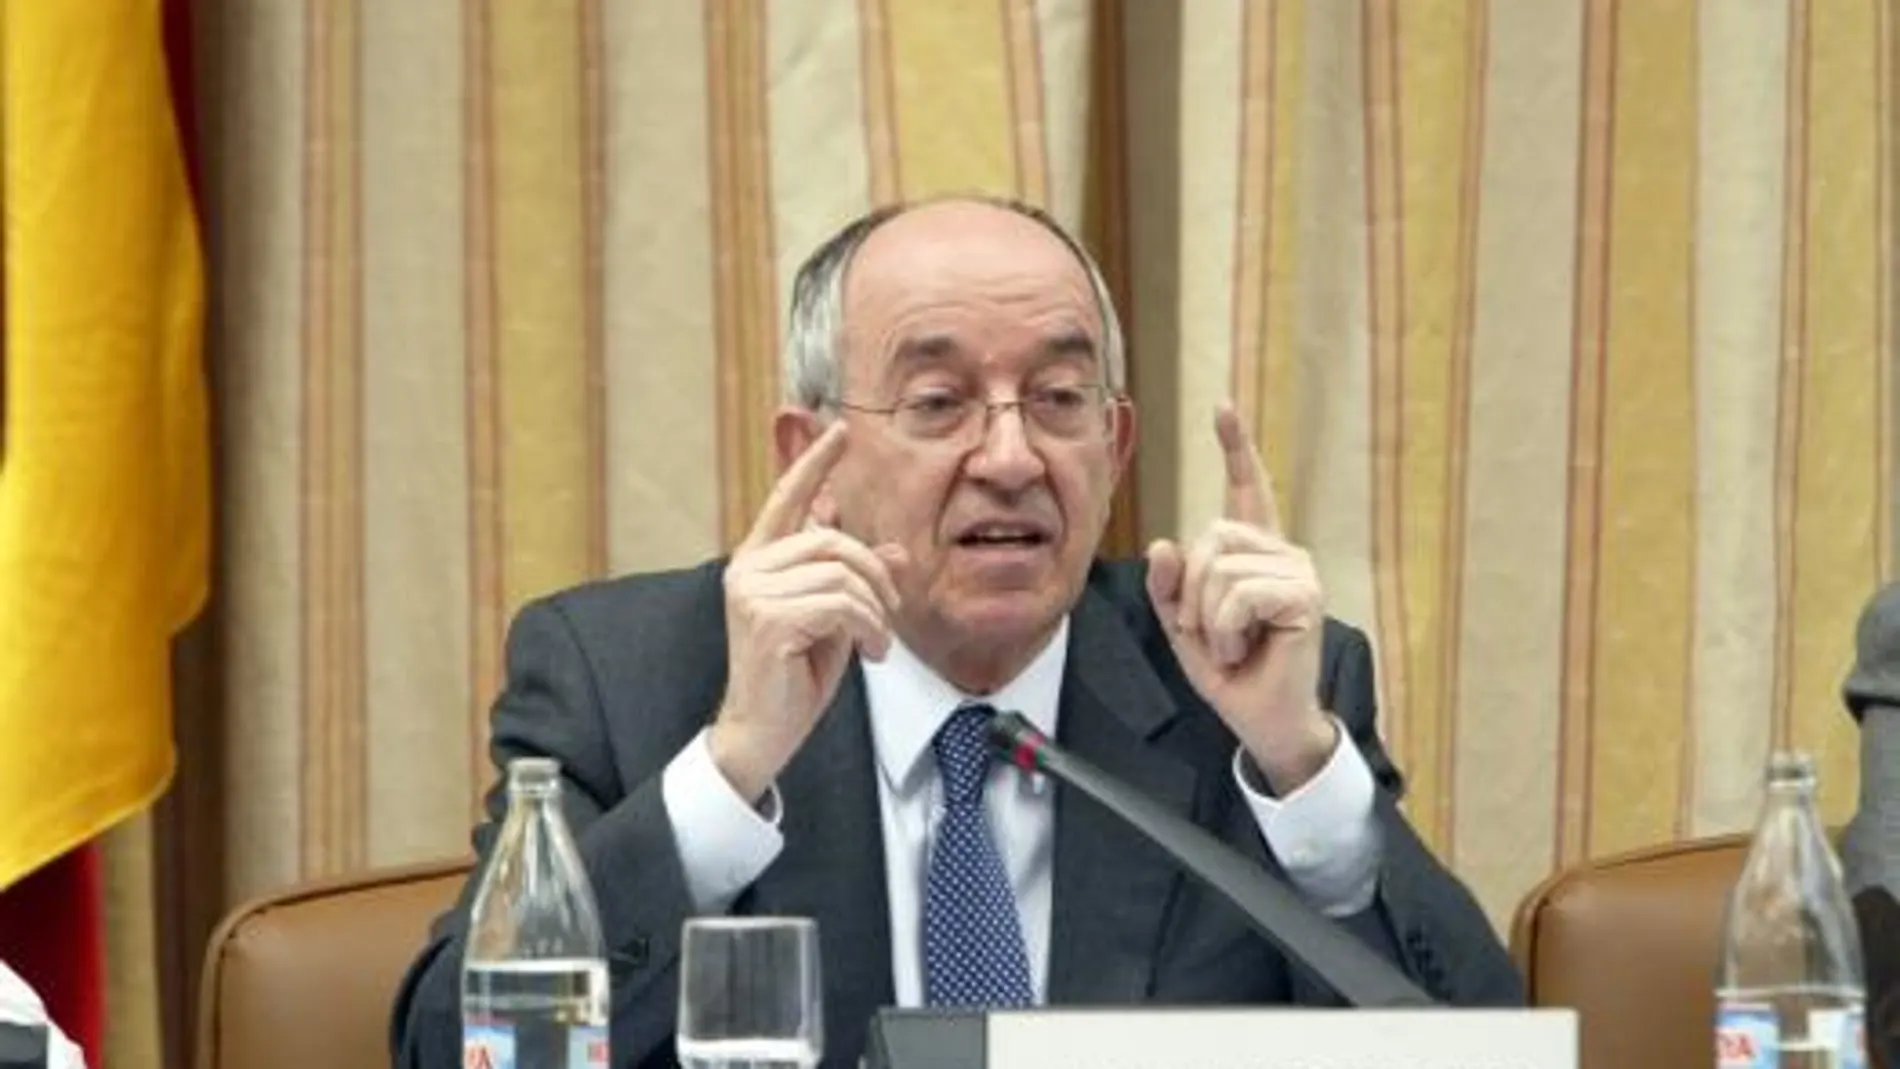 El gobernador del Banco de España, Miguel Ángel Fernández Ordóñez